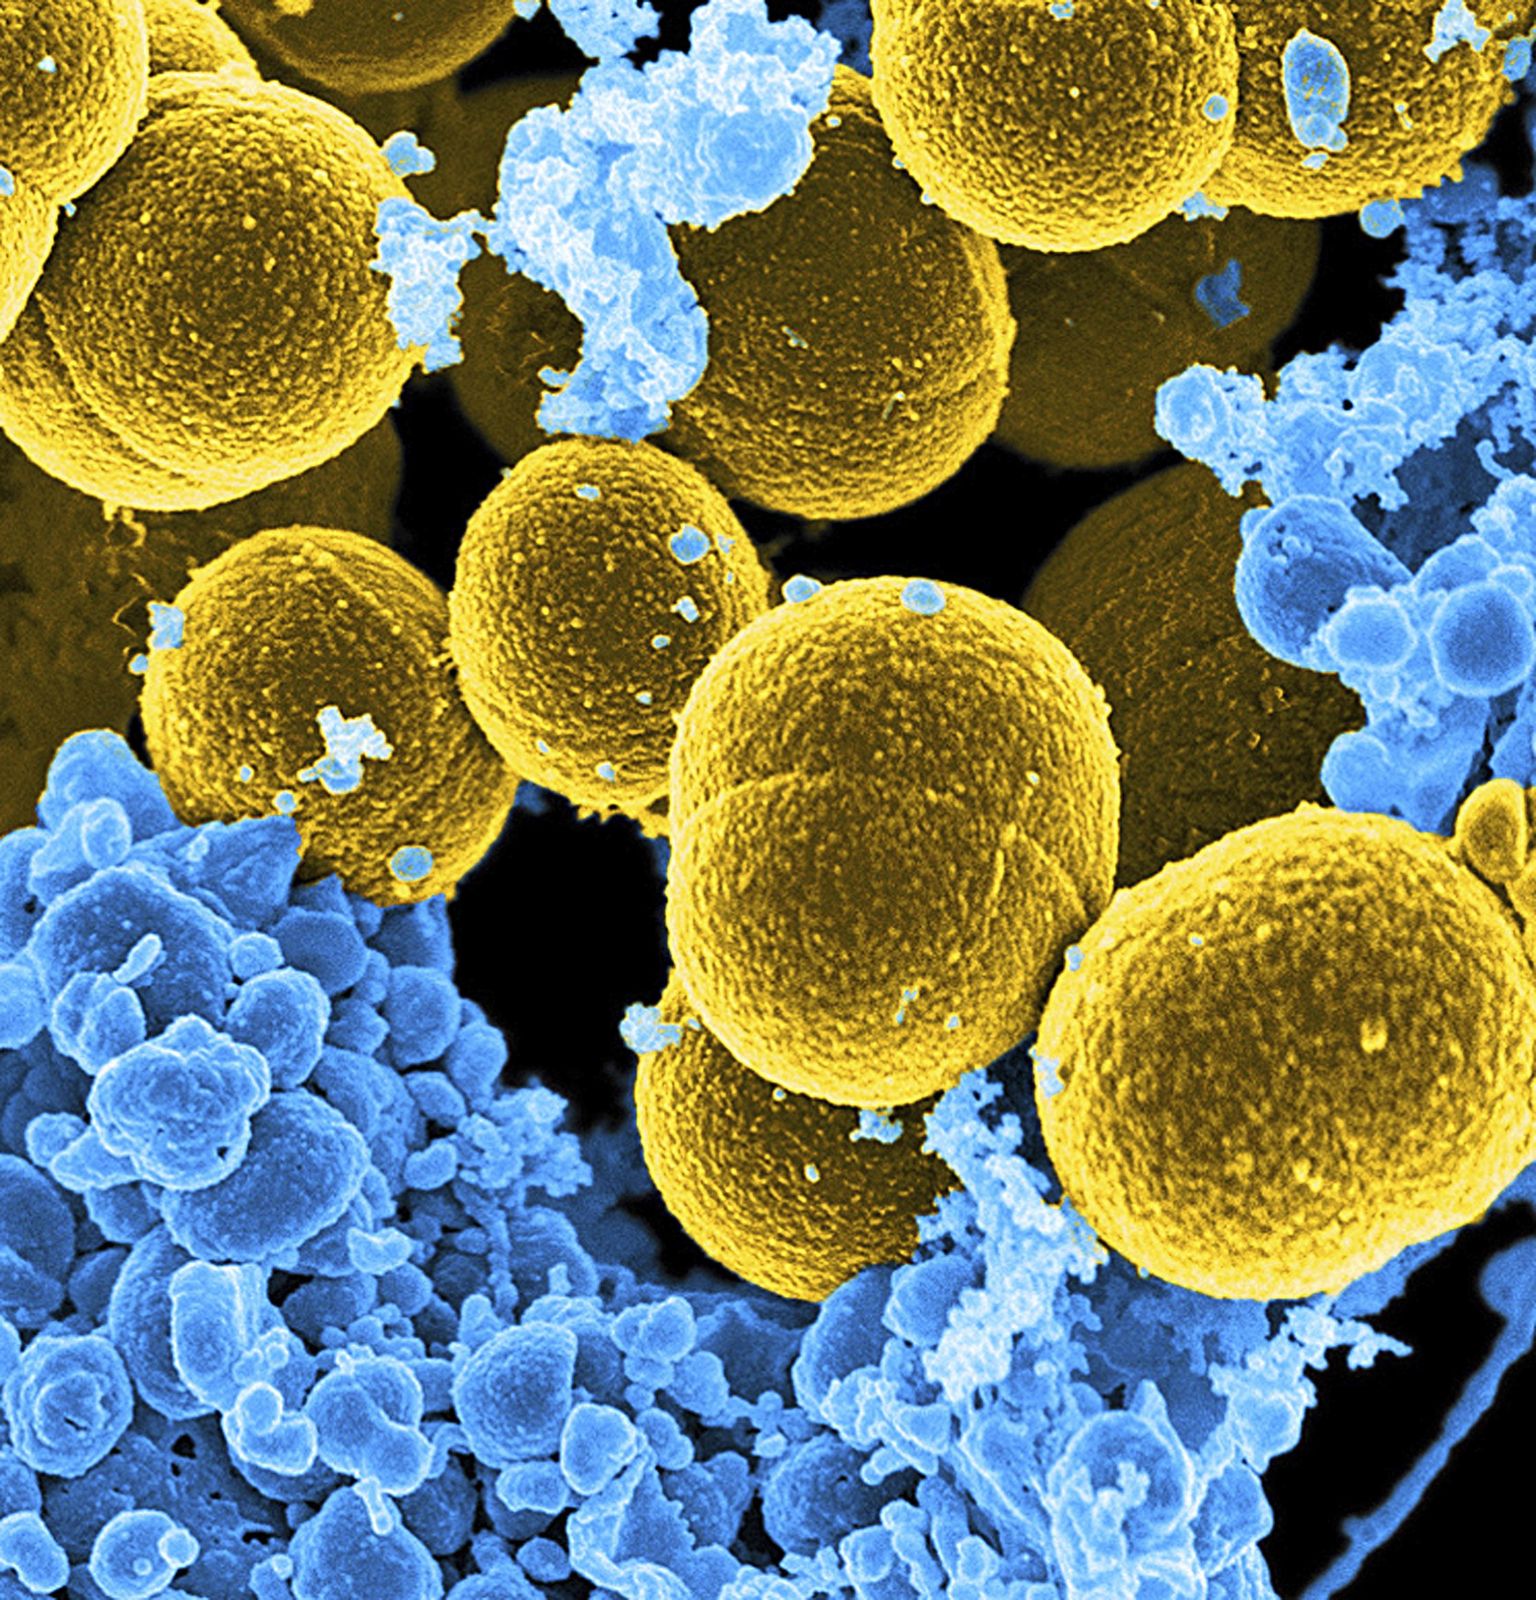 WHO raport näitab esimest korda konkreetselt millised bakterid on antibiootikumide resistentsuse arenemise osas kõige ohtlikumad.